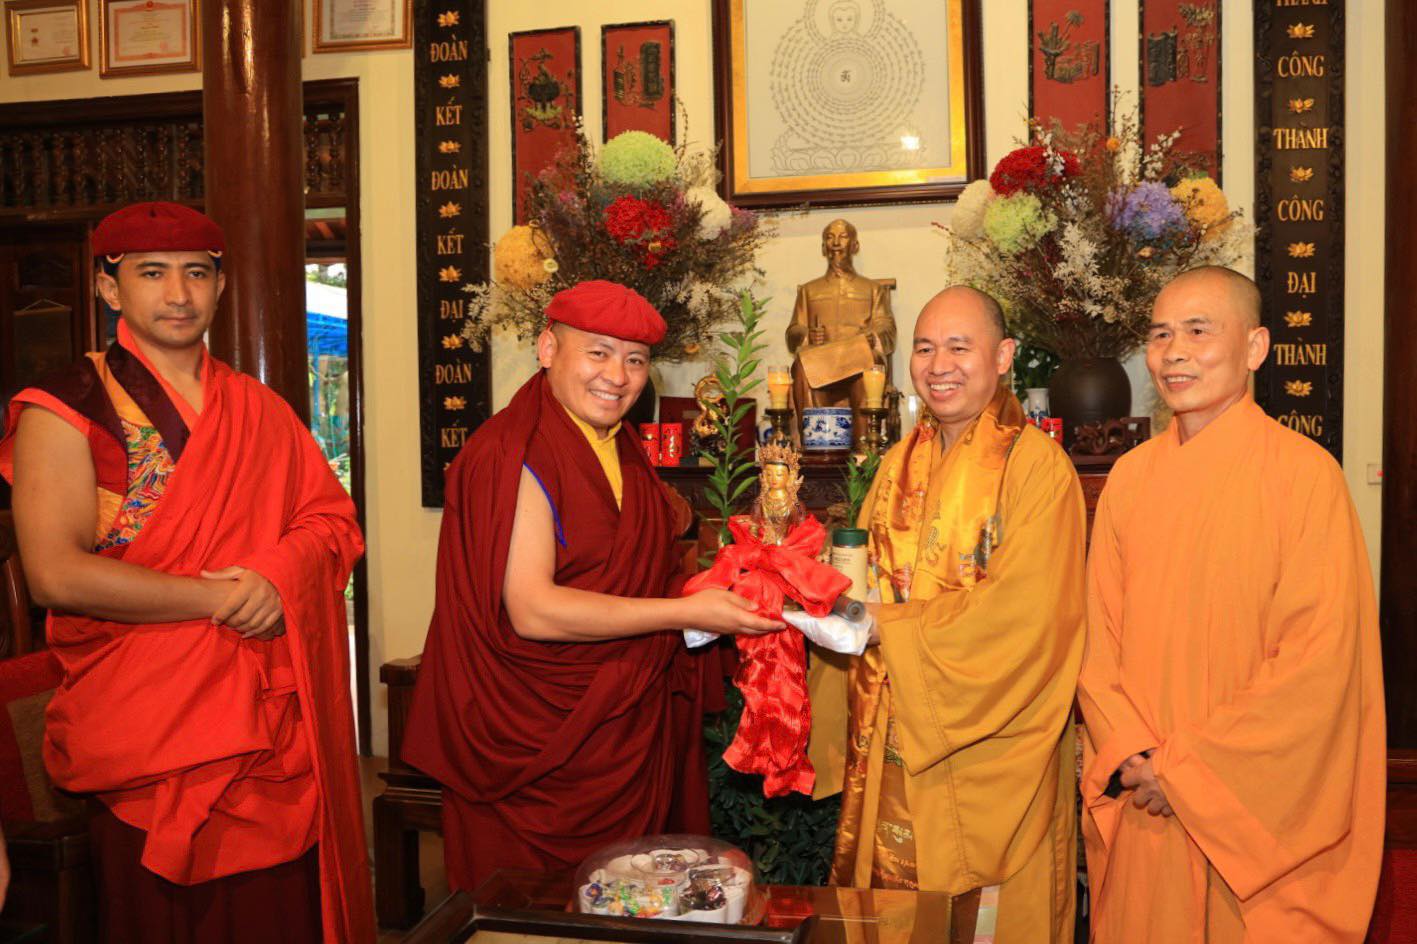 Thượng tọa Thích Đức Thiện tiếp đón ngài Drukpa Thuksey Rinpoche tại chùa Phật tích (Bắc Ninh). Ảnh: BTC